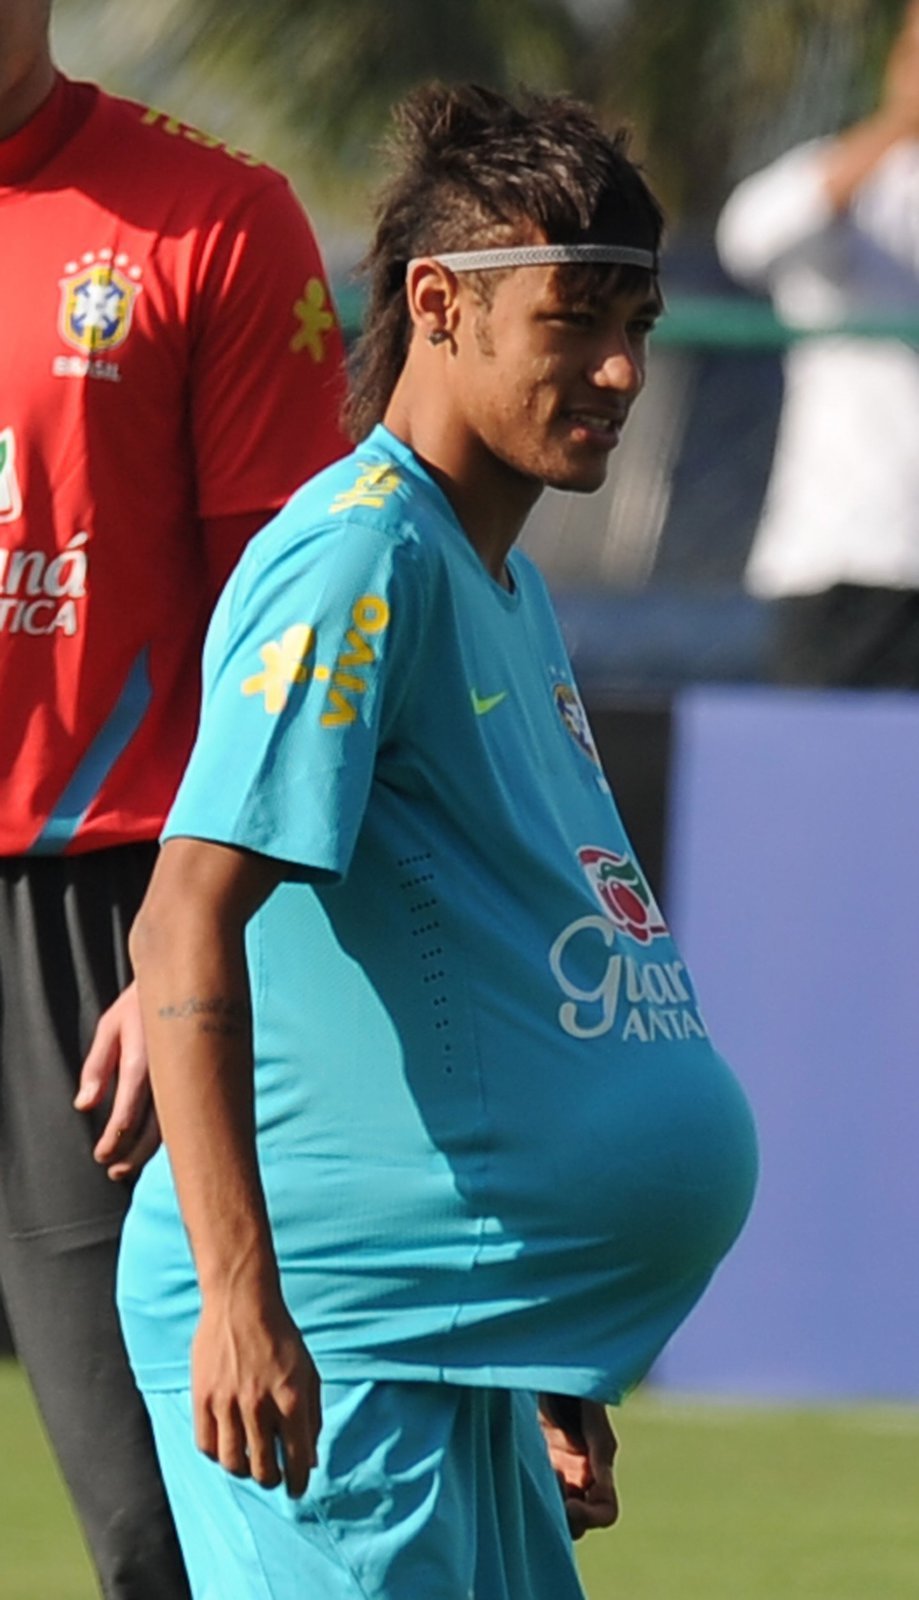 Neymar využije každou volnější chvilku k nějakému vtípku